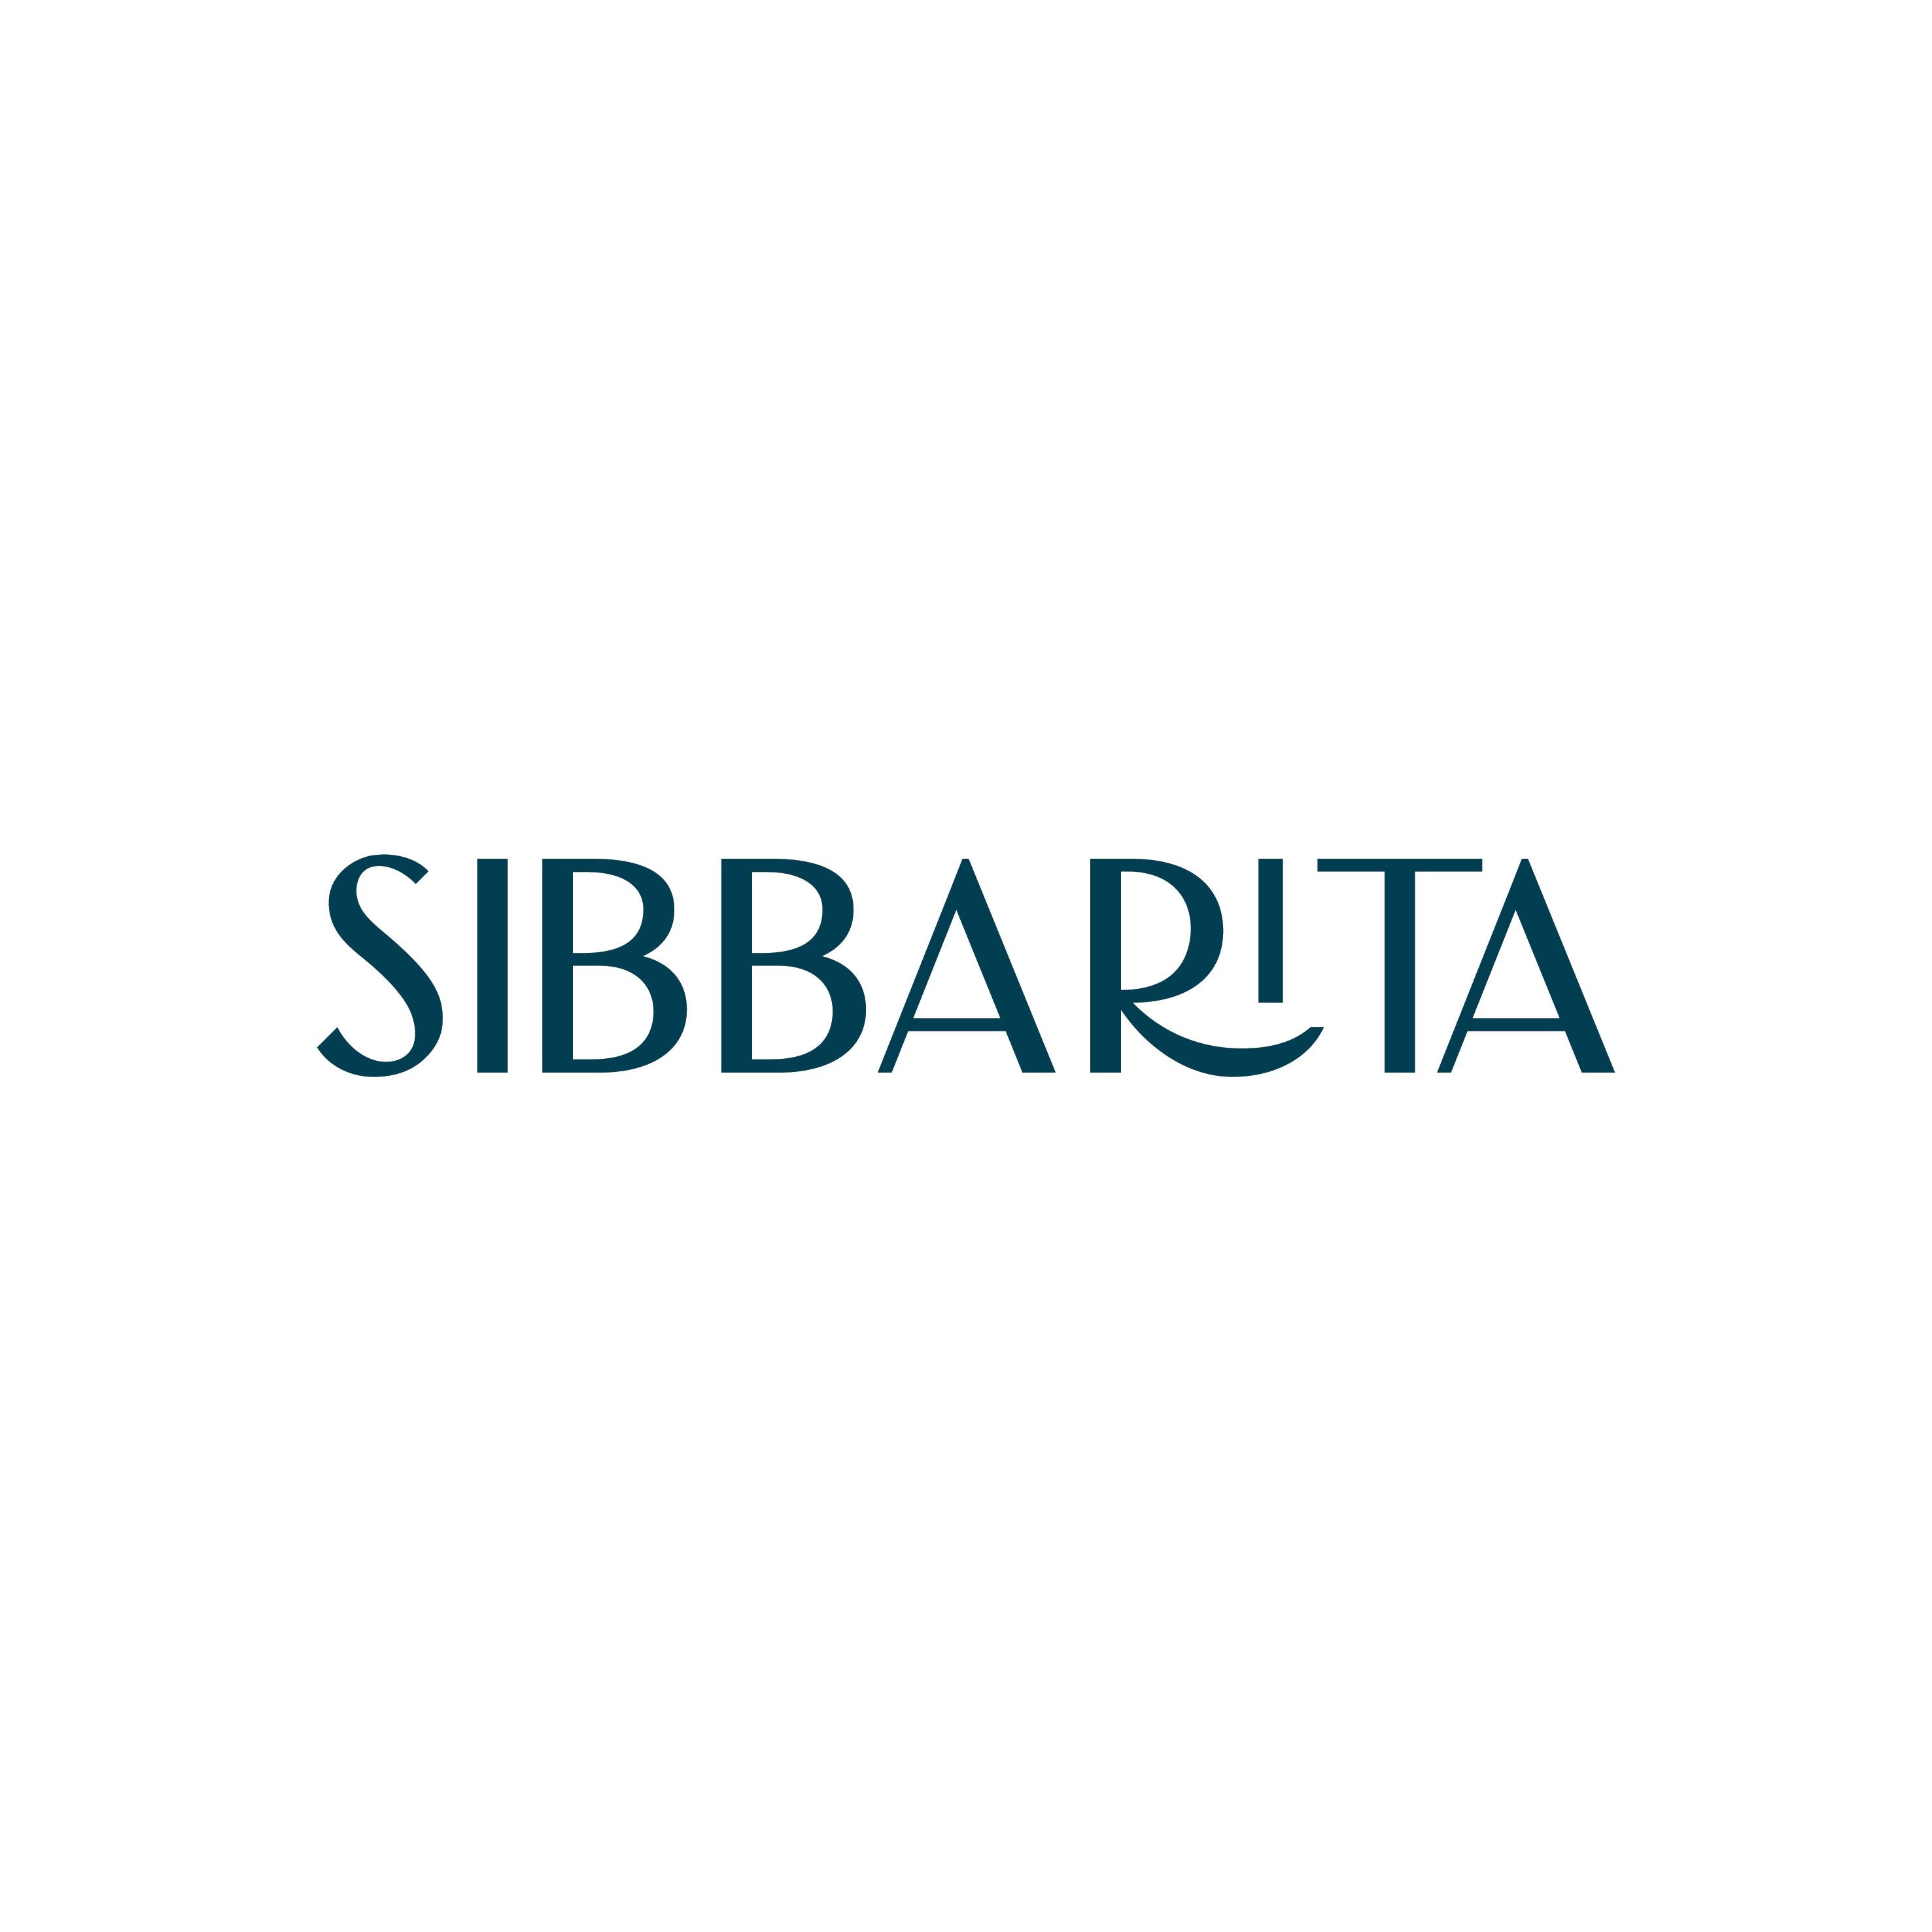 Sibbarita